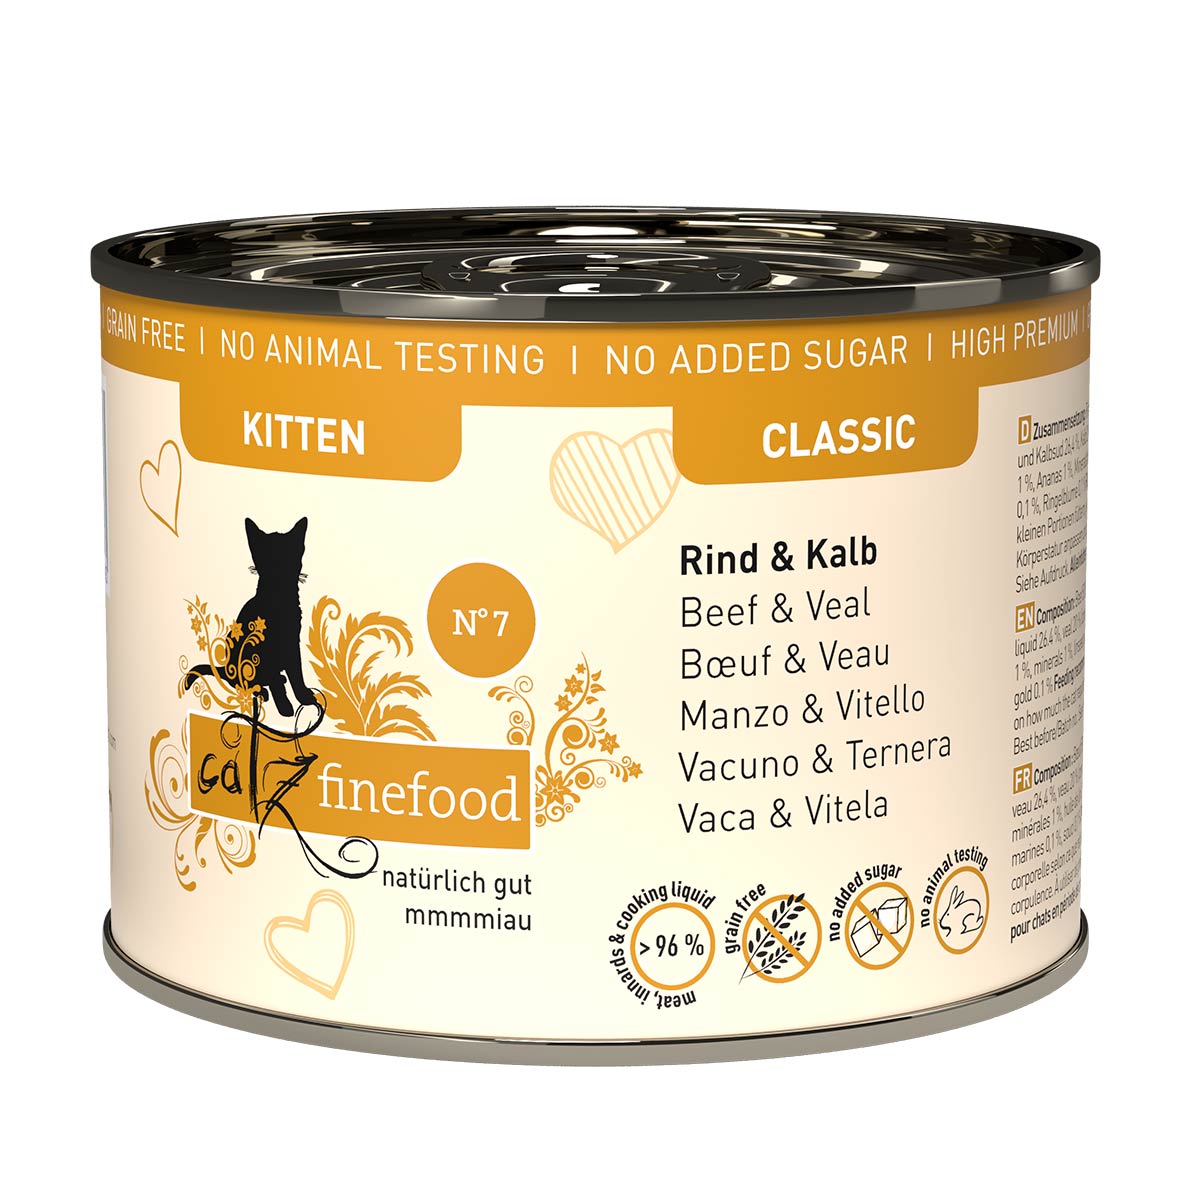 catz finefood Kitten No. 7 hovězí a telecí maso 24 × 200 g